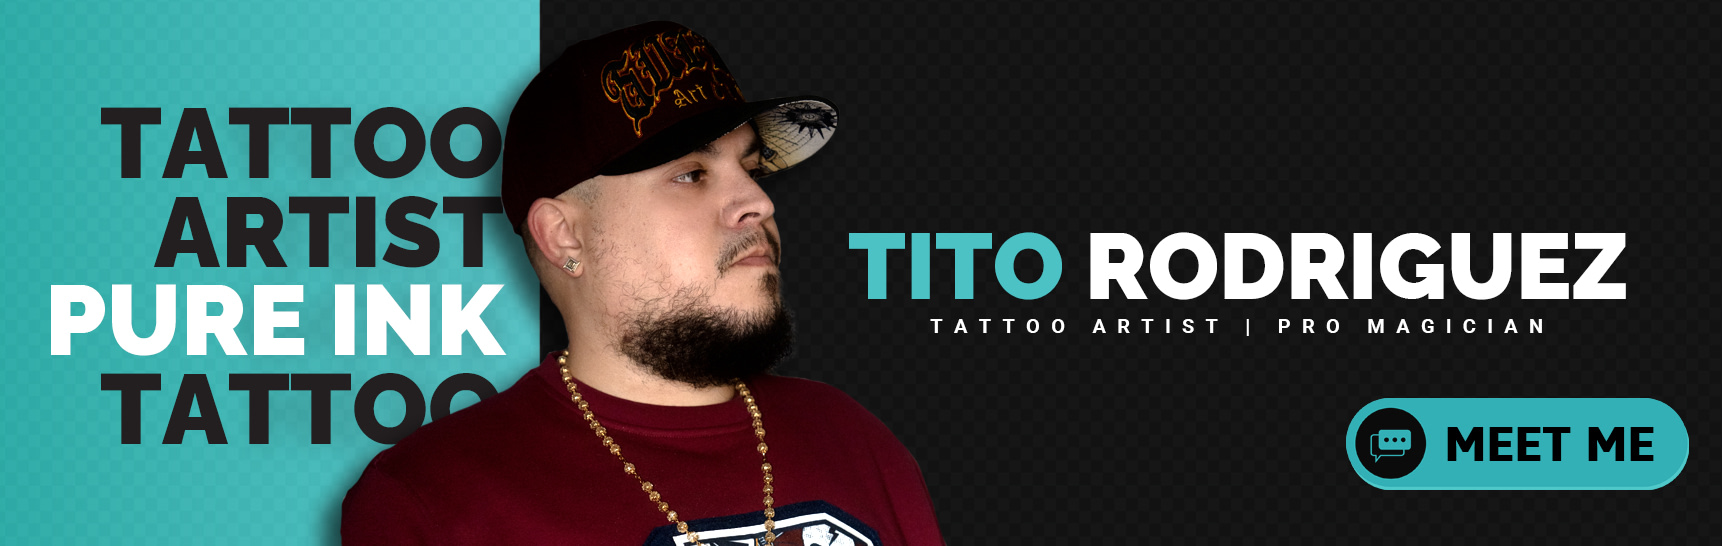 Tito Rodriguez - Tattoo Artist - Magician - Pure Ink Tattoo Studio NJ